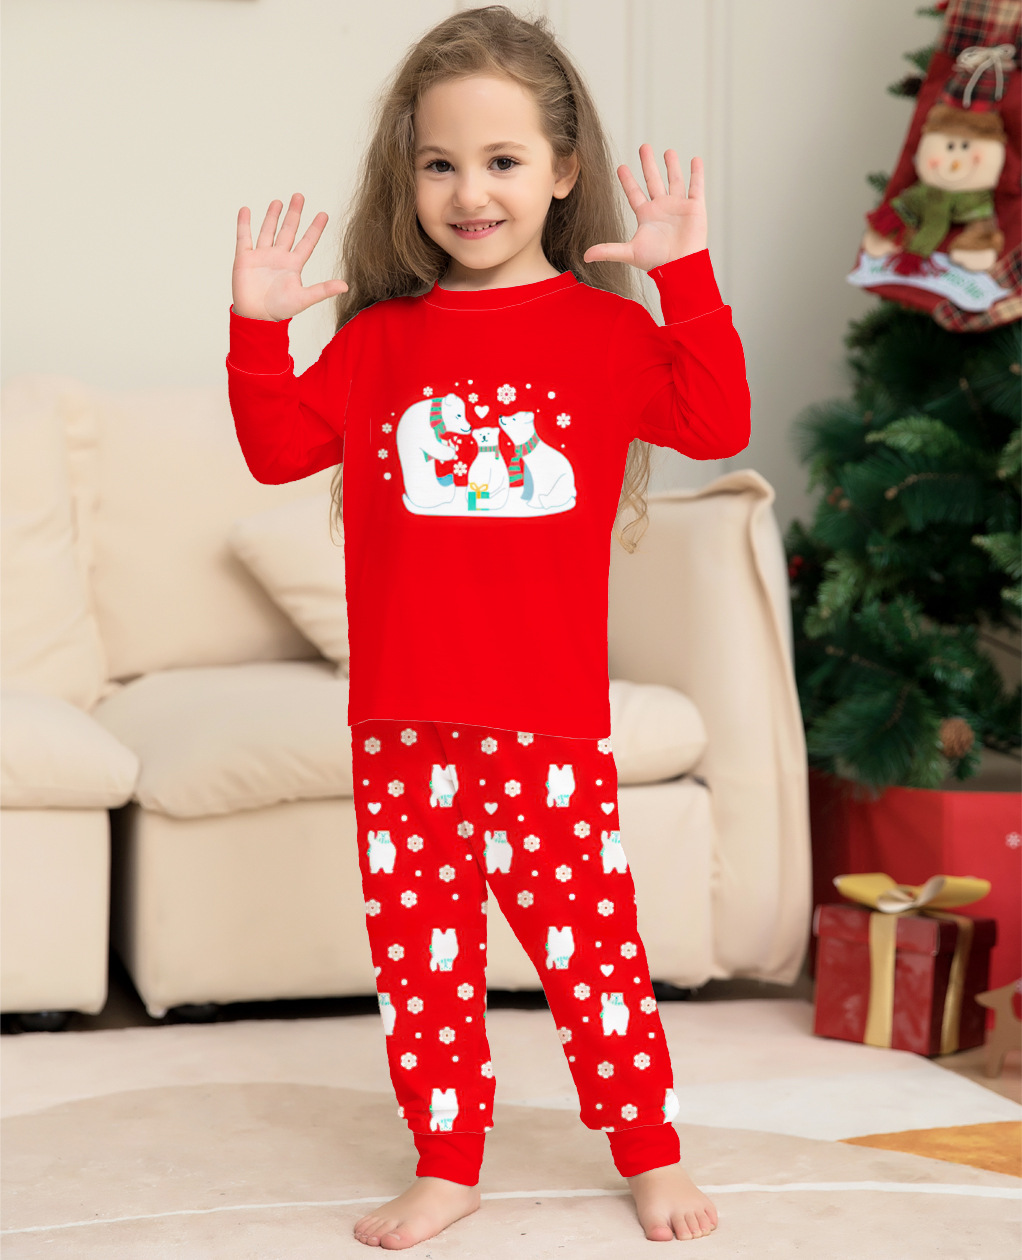 Matching family Christmas pyjamas